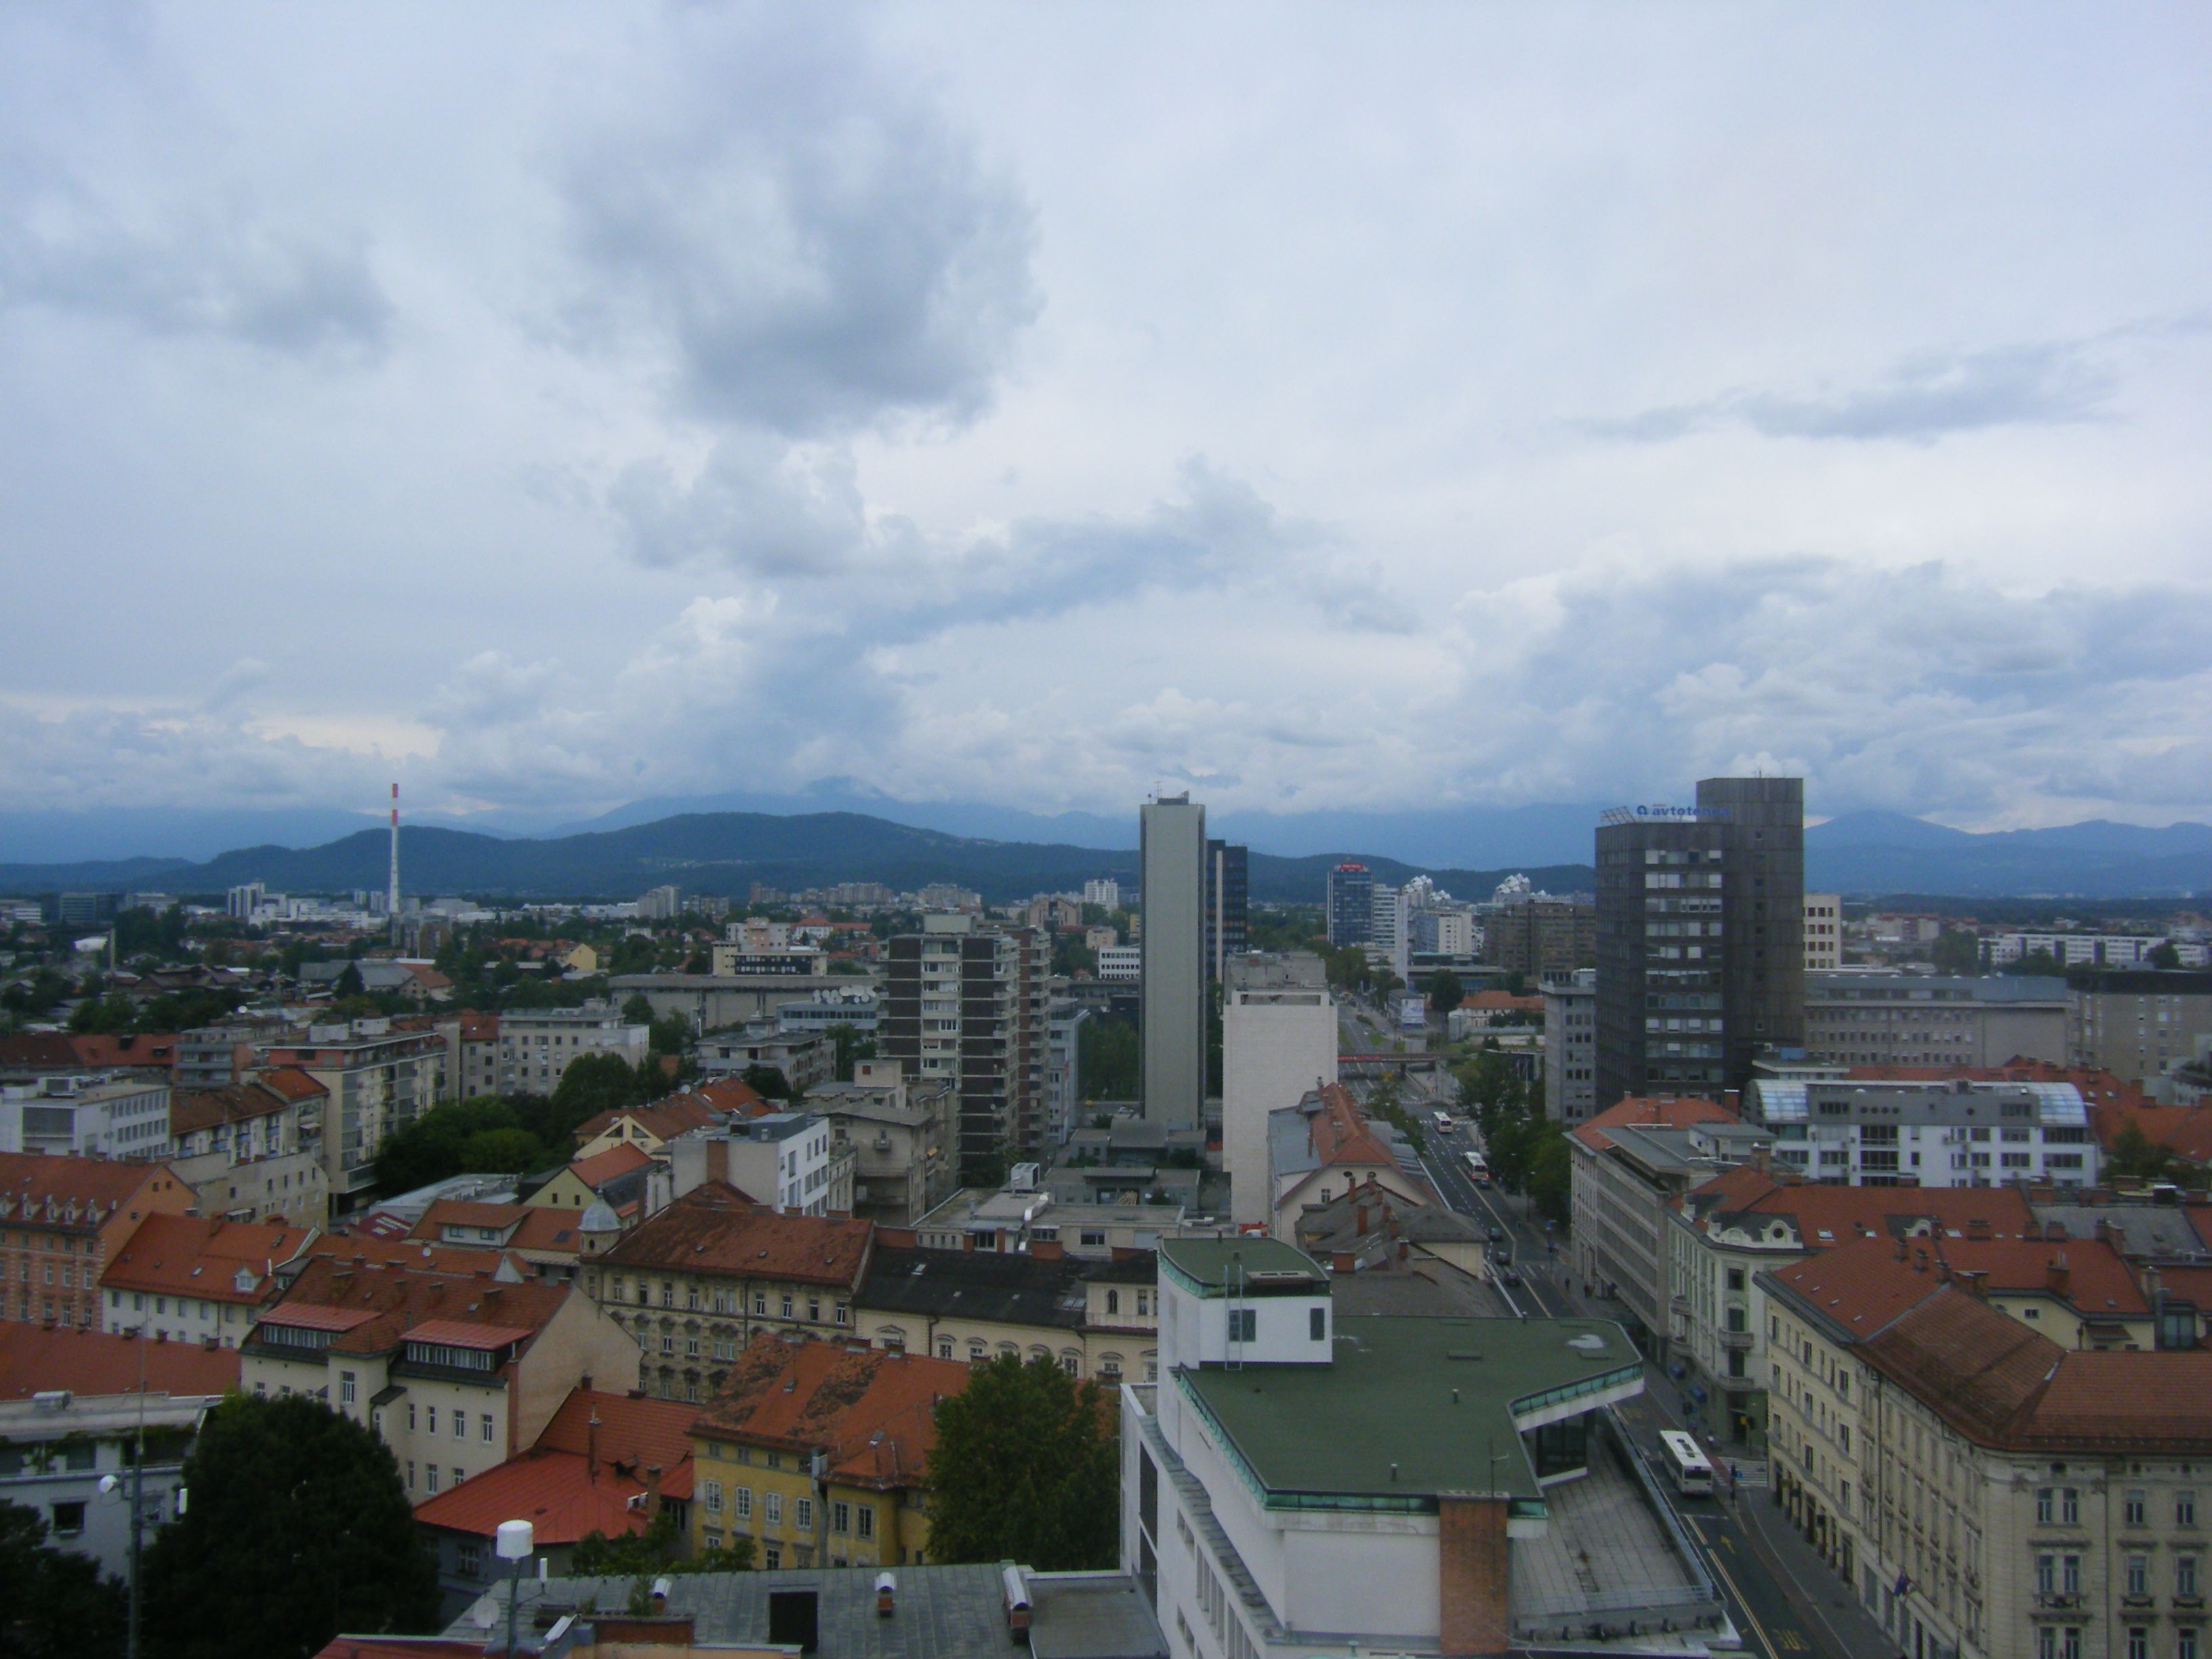 Ljubljana in 2014, upvote if you agree